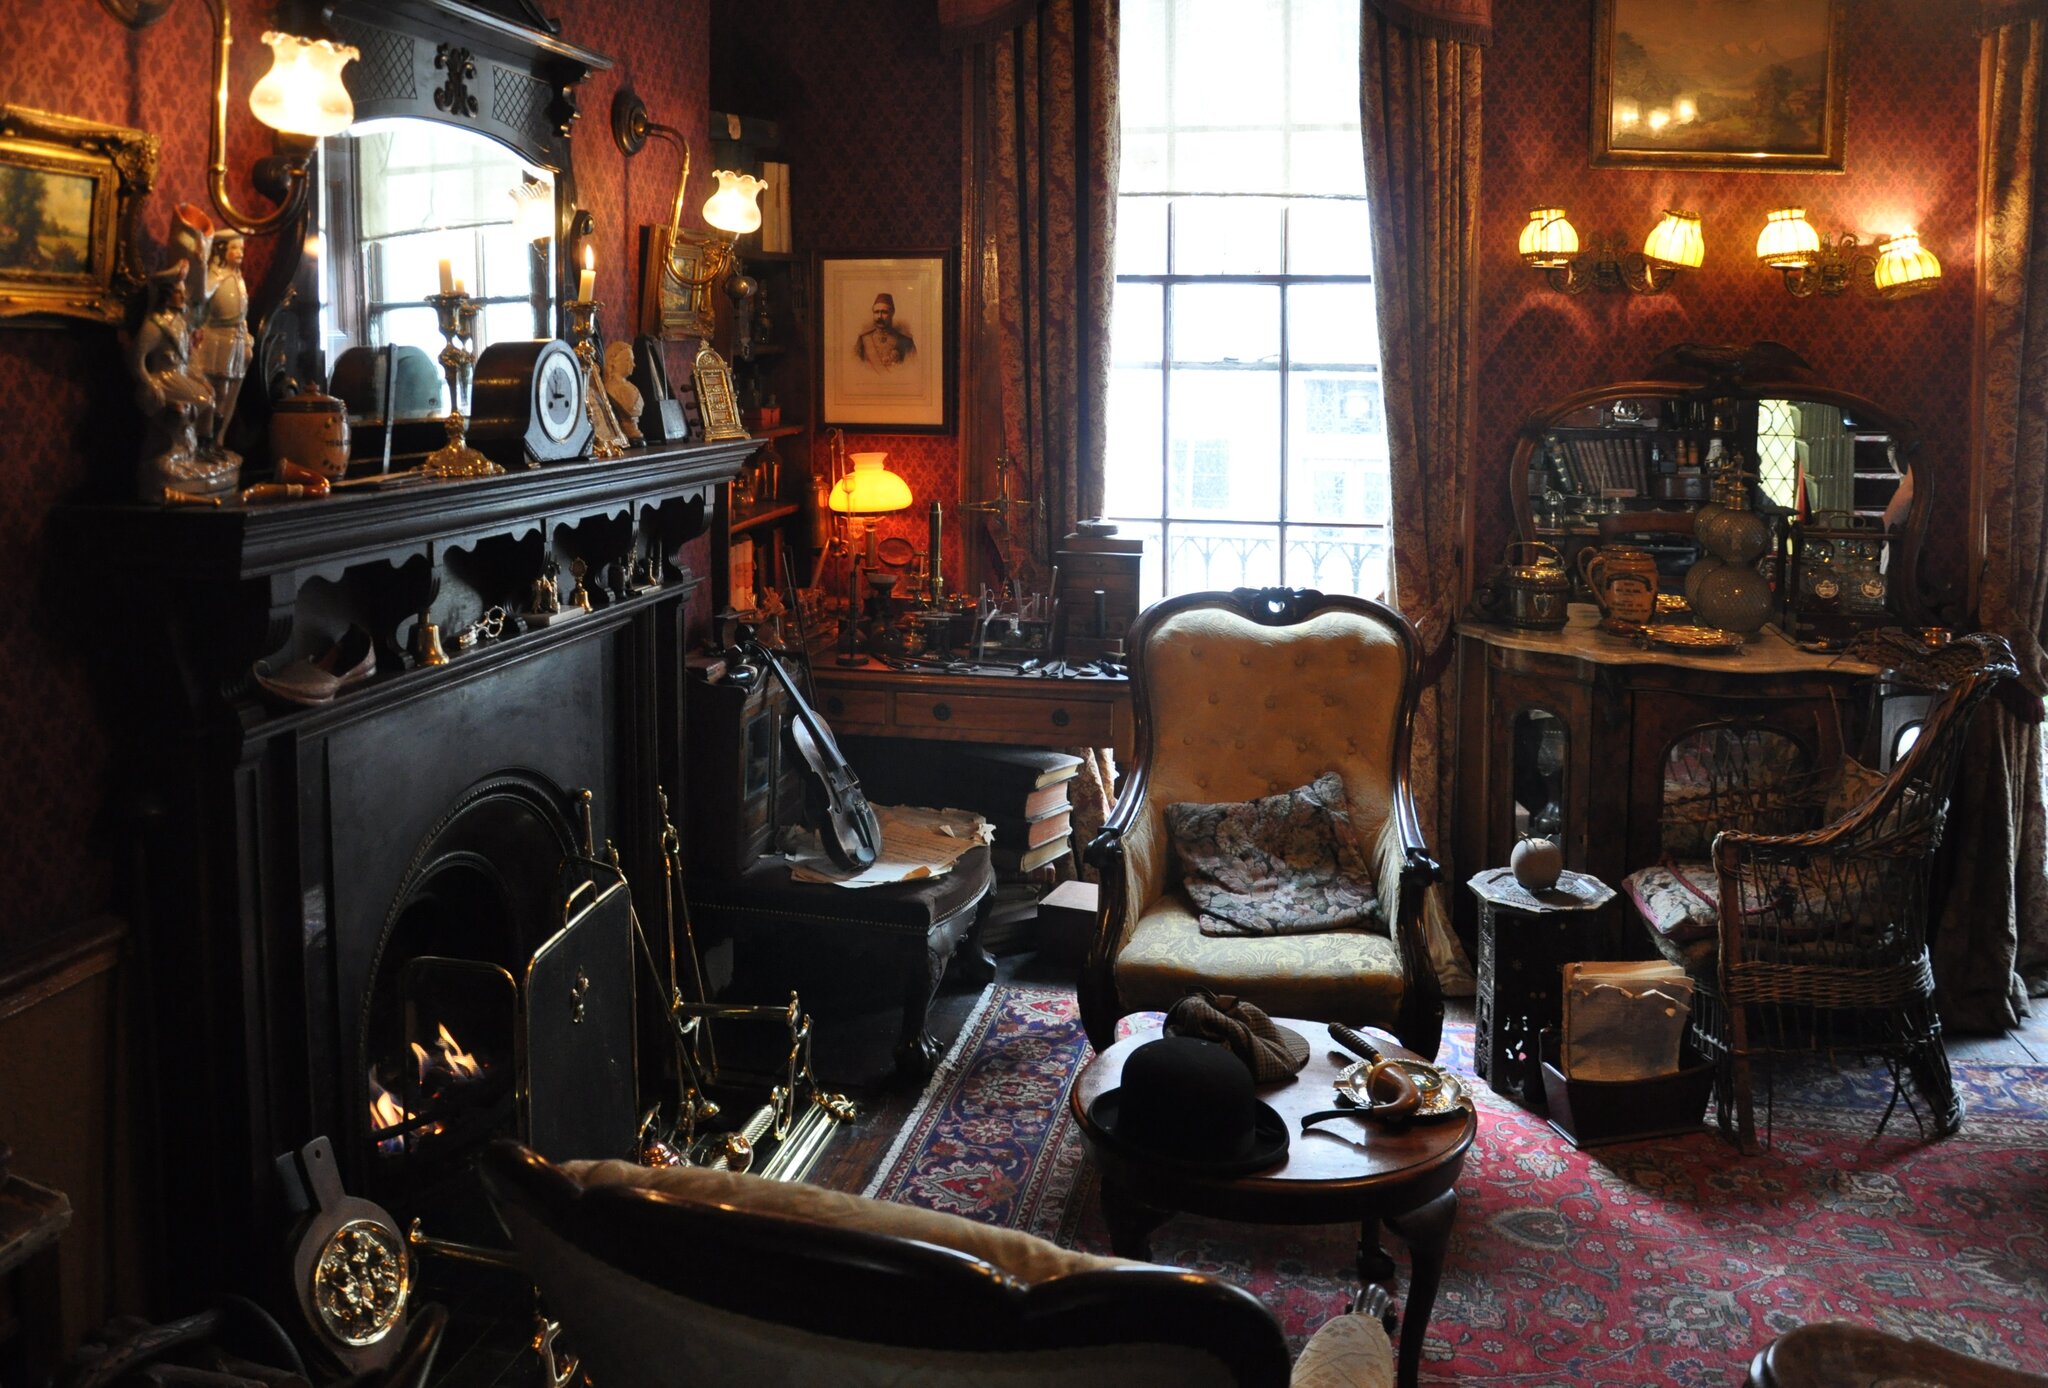 Muzeum Sherlocka Holmesa przy Baker Street 221B w Londynie, pokój gościnny Muzeum Sherlocka Holmesa przy Baker Street 221B w Londynie, pokój gościnny Źródło: fotografia barwna, domena publiczna.